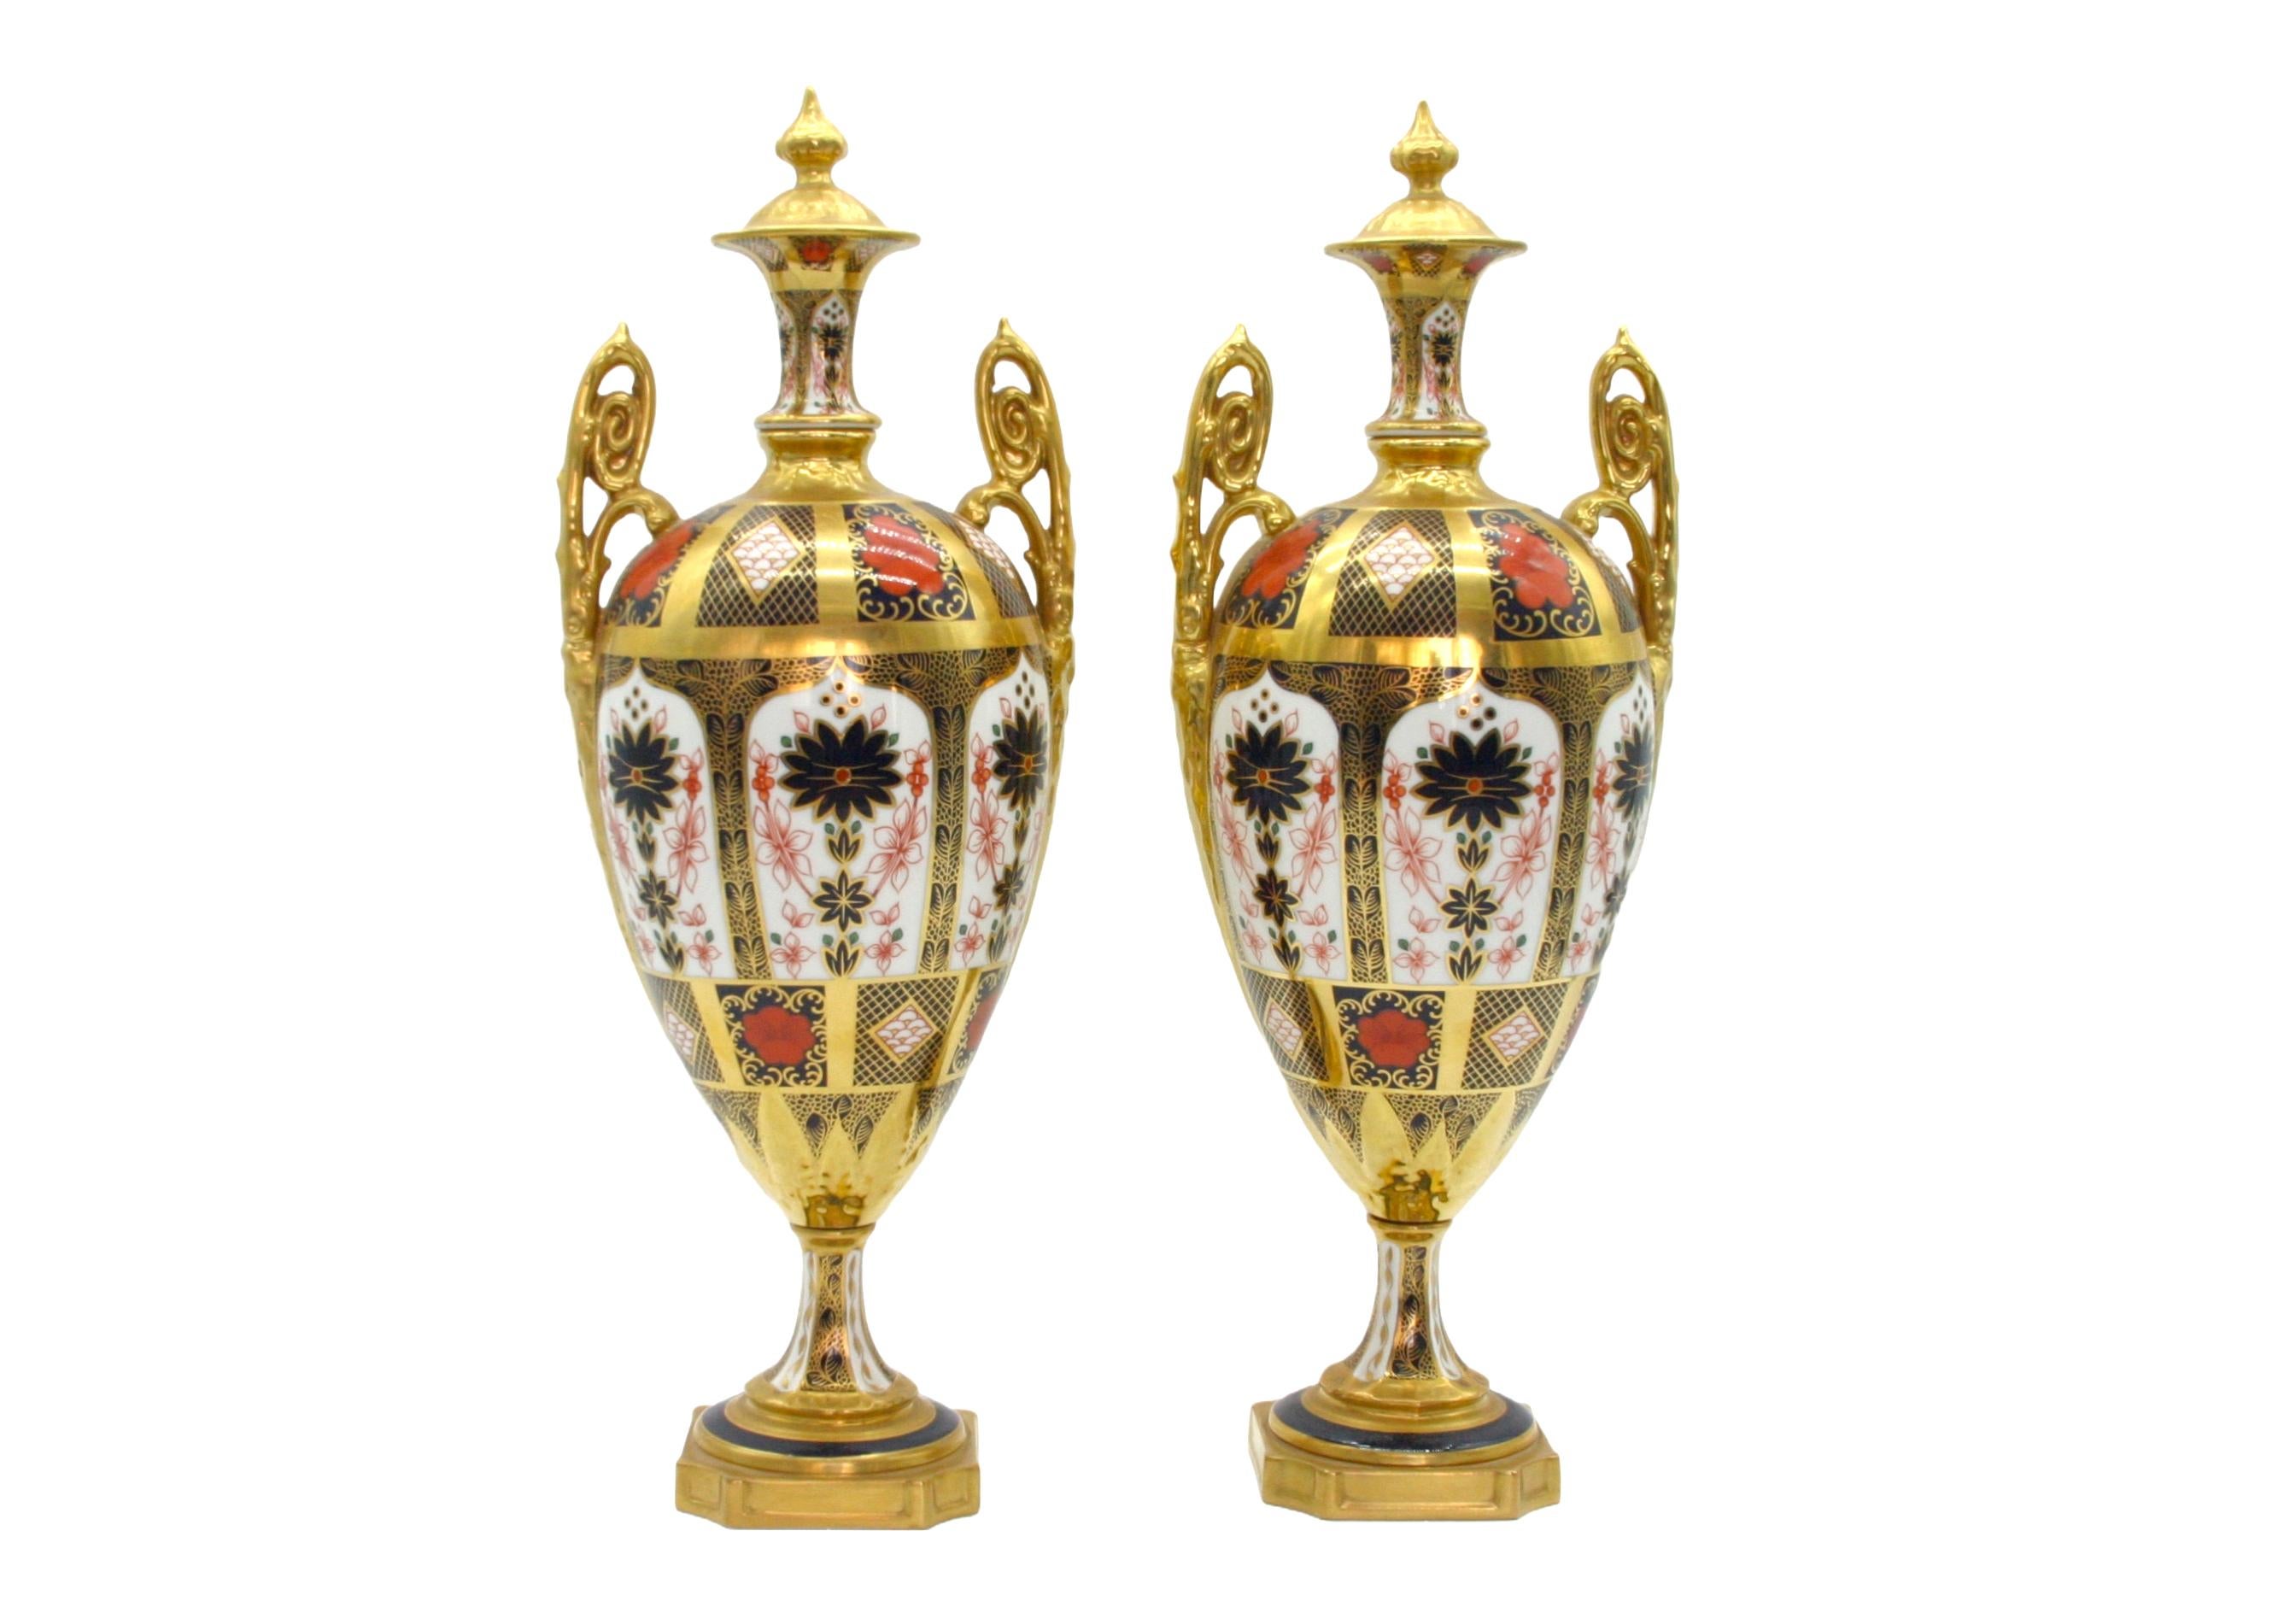 Magnifique paire d'urnes/vases décoratifs en porcelaine Royal Crown Derby de style Imari, dorés et peints à la main, avec poignées latérales doubles dorées. Chaque urne présente un extérieur en or 22k et des détails peints à la main avec un